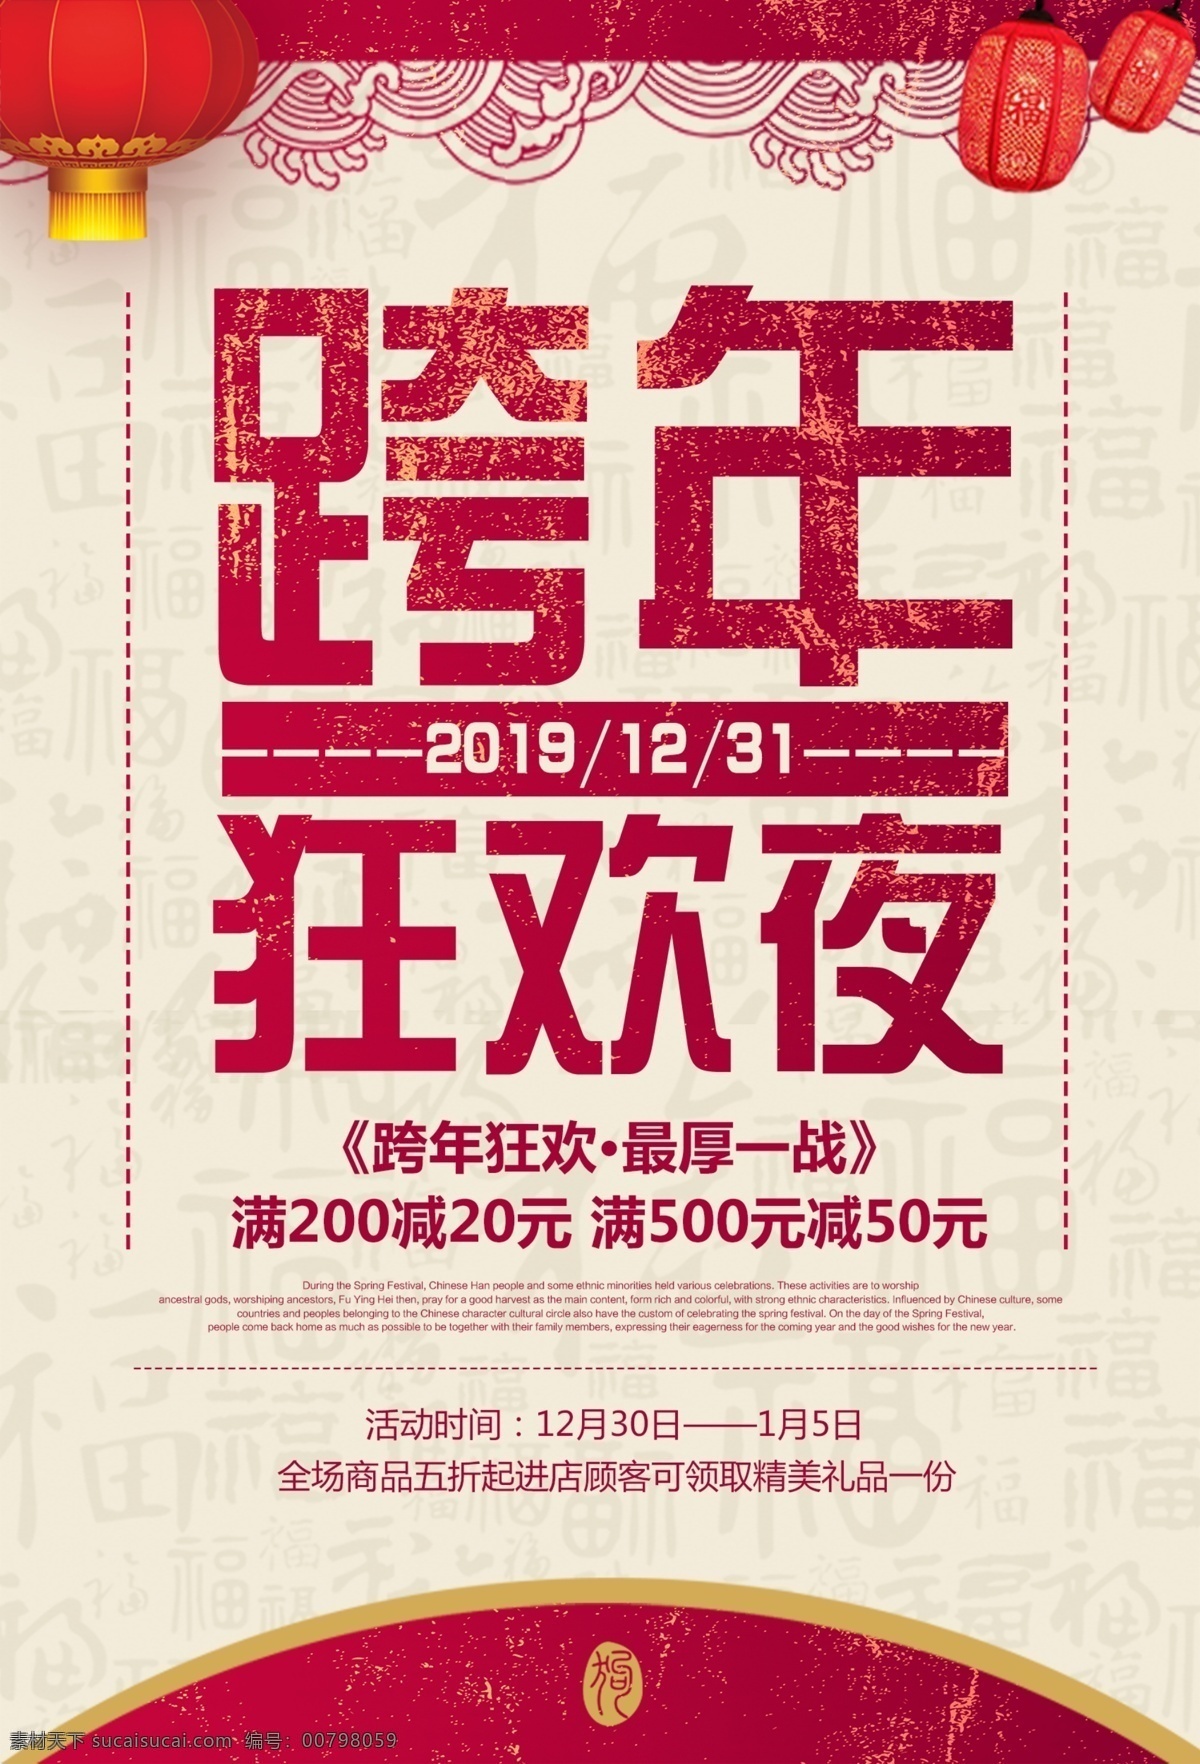 2019 跨 年 狂欢夜 海报 2019跨年 猪年 喜庆 春节 新年快乐 辞旧迎新 跨年狂欢夜 节日海报